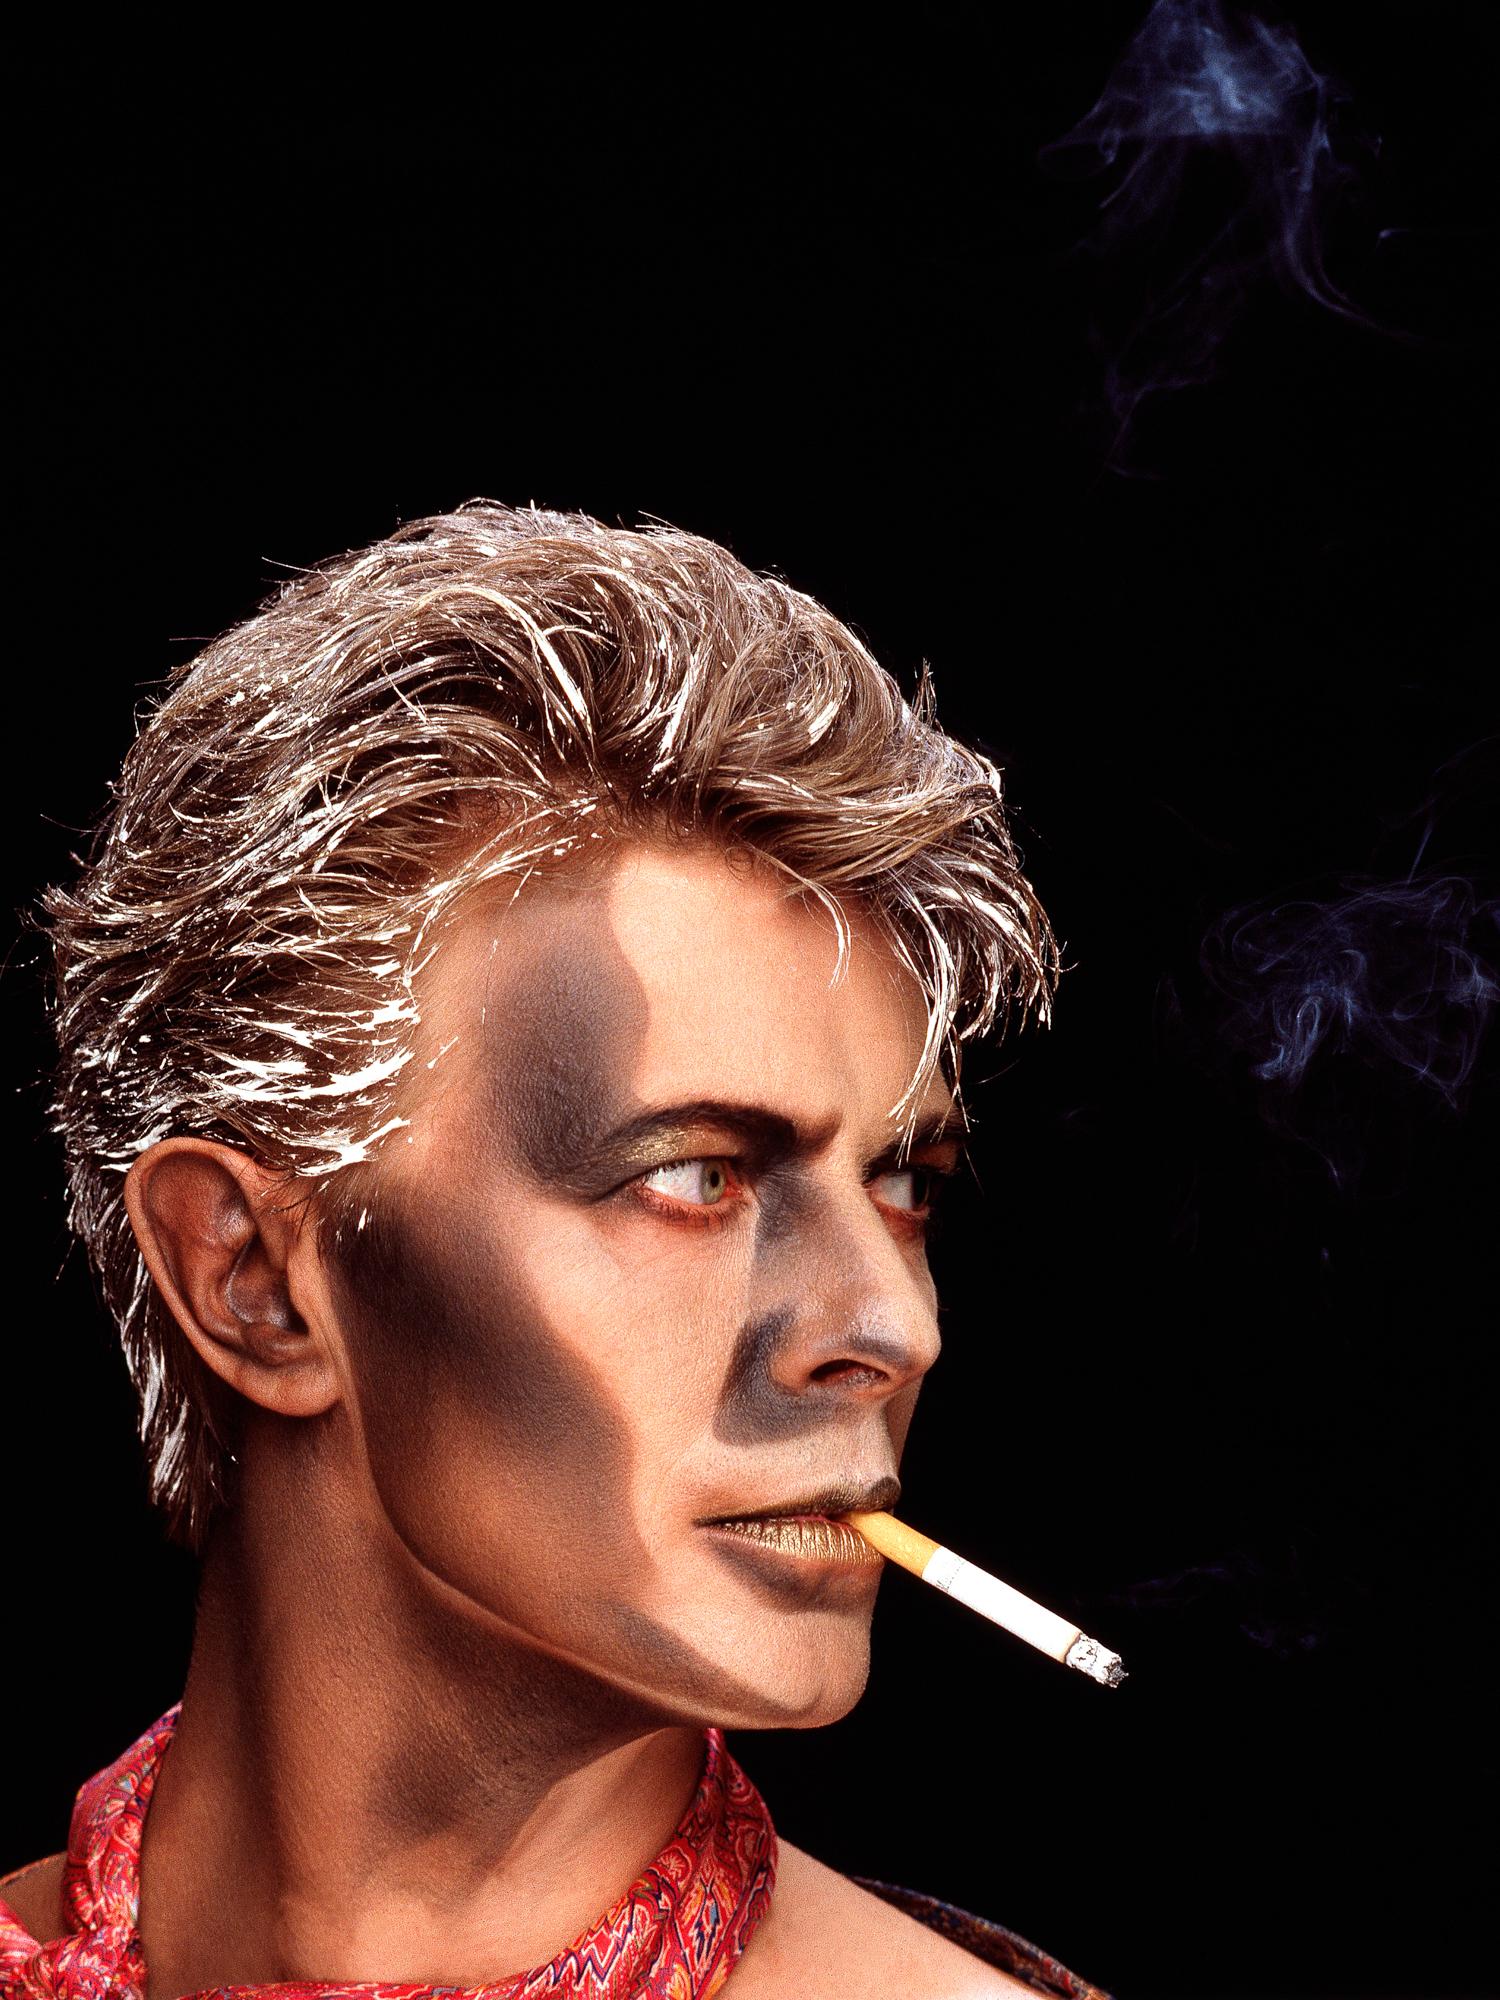 Greg Gorman Portrait Photograph – David Bowie Blue Jean, Contemporary, Celebrity, Fotografie